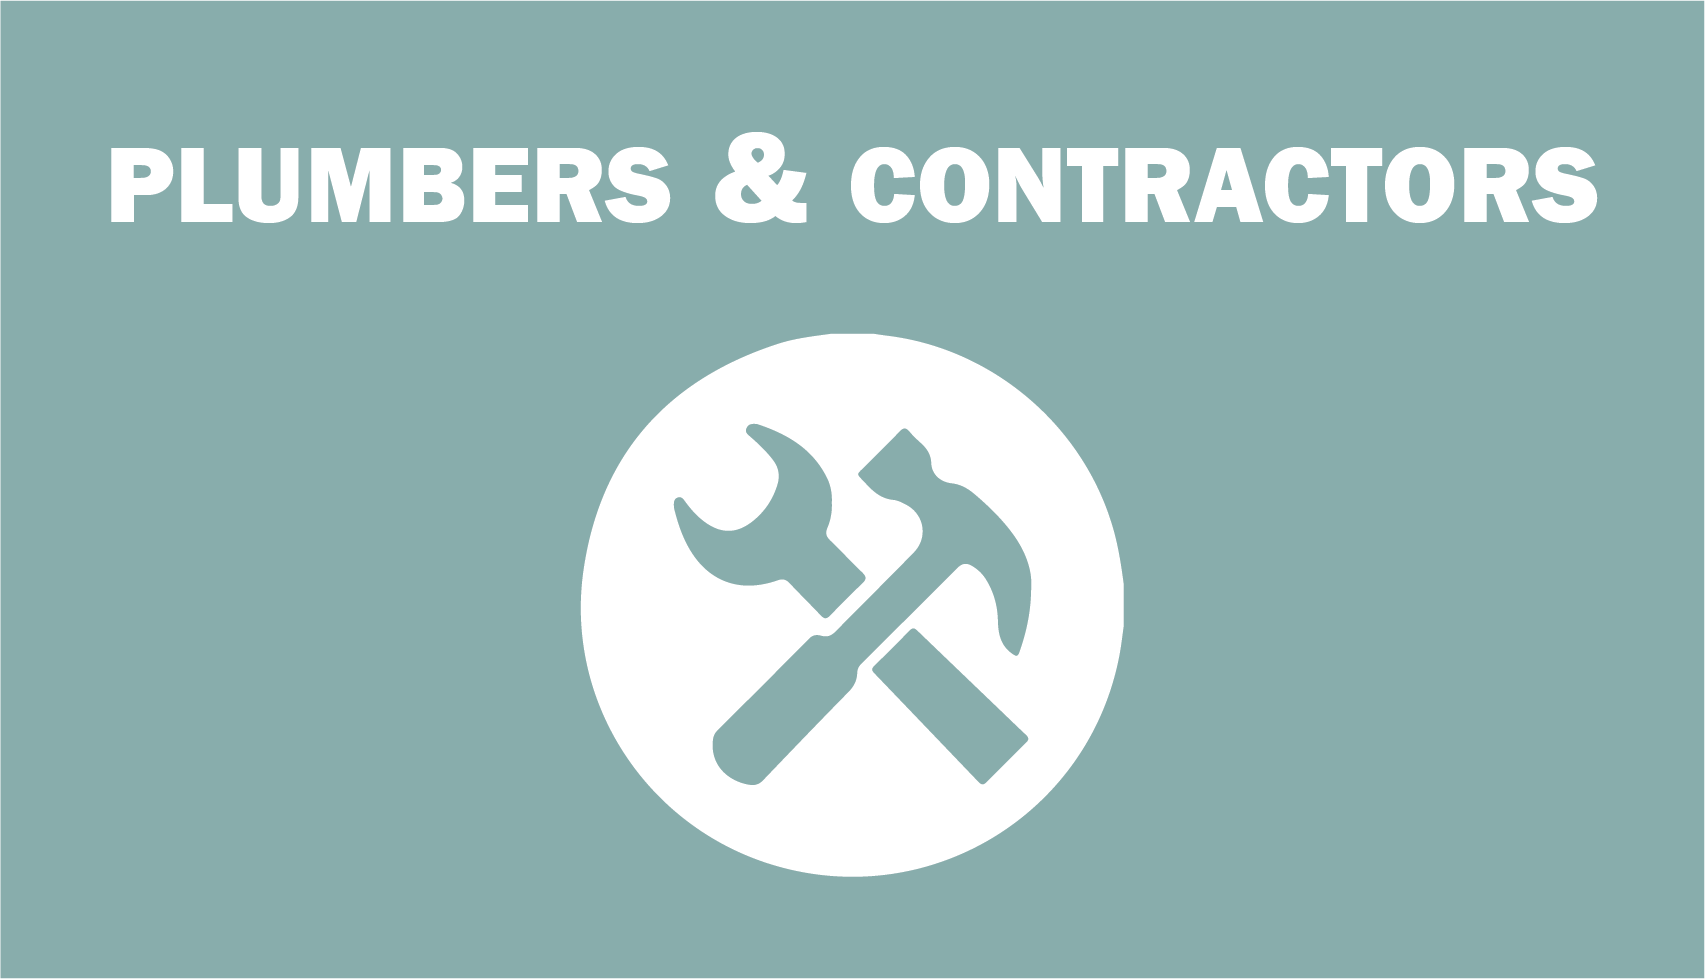 Plumbers & Contractors